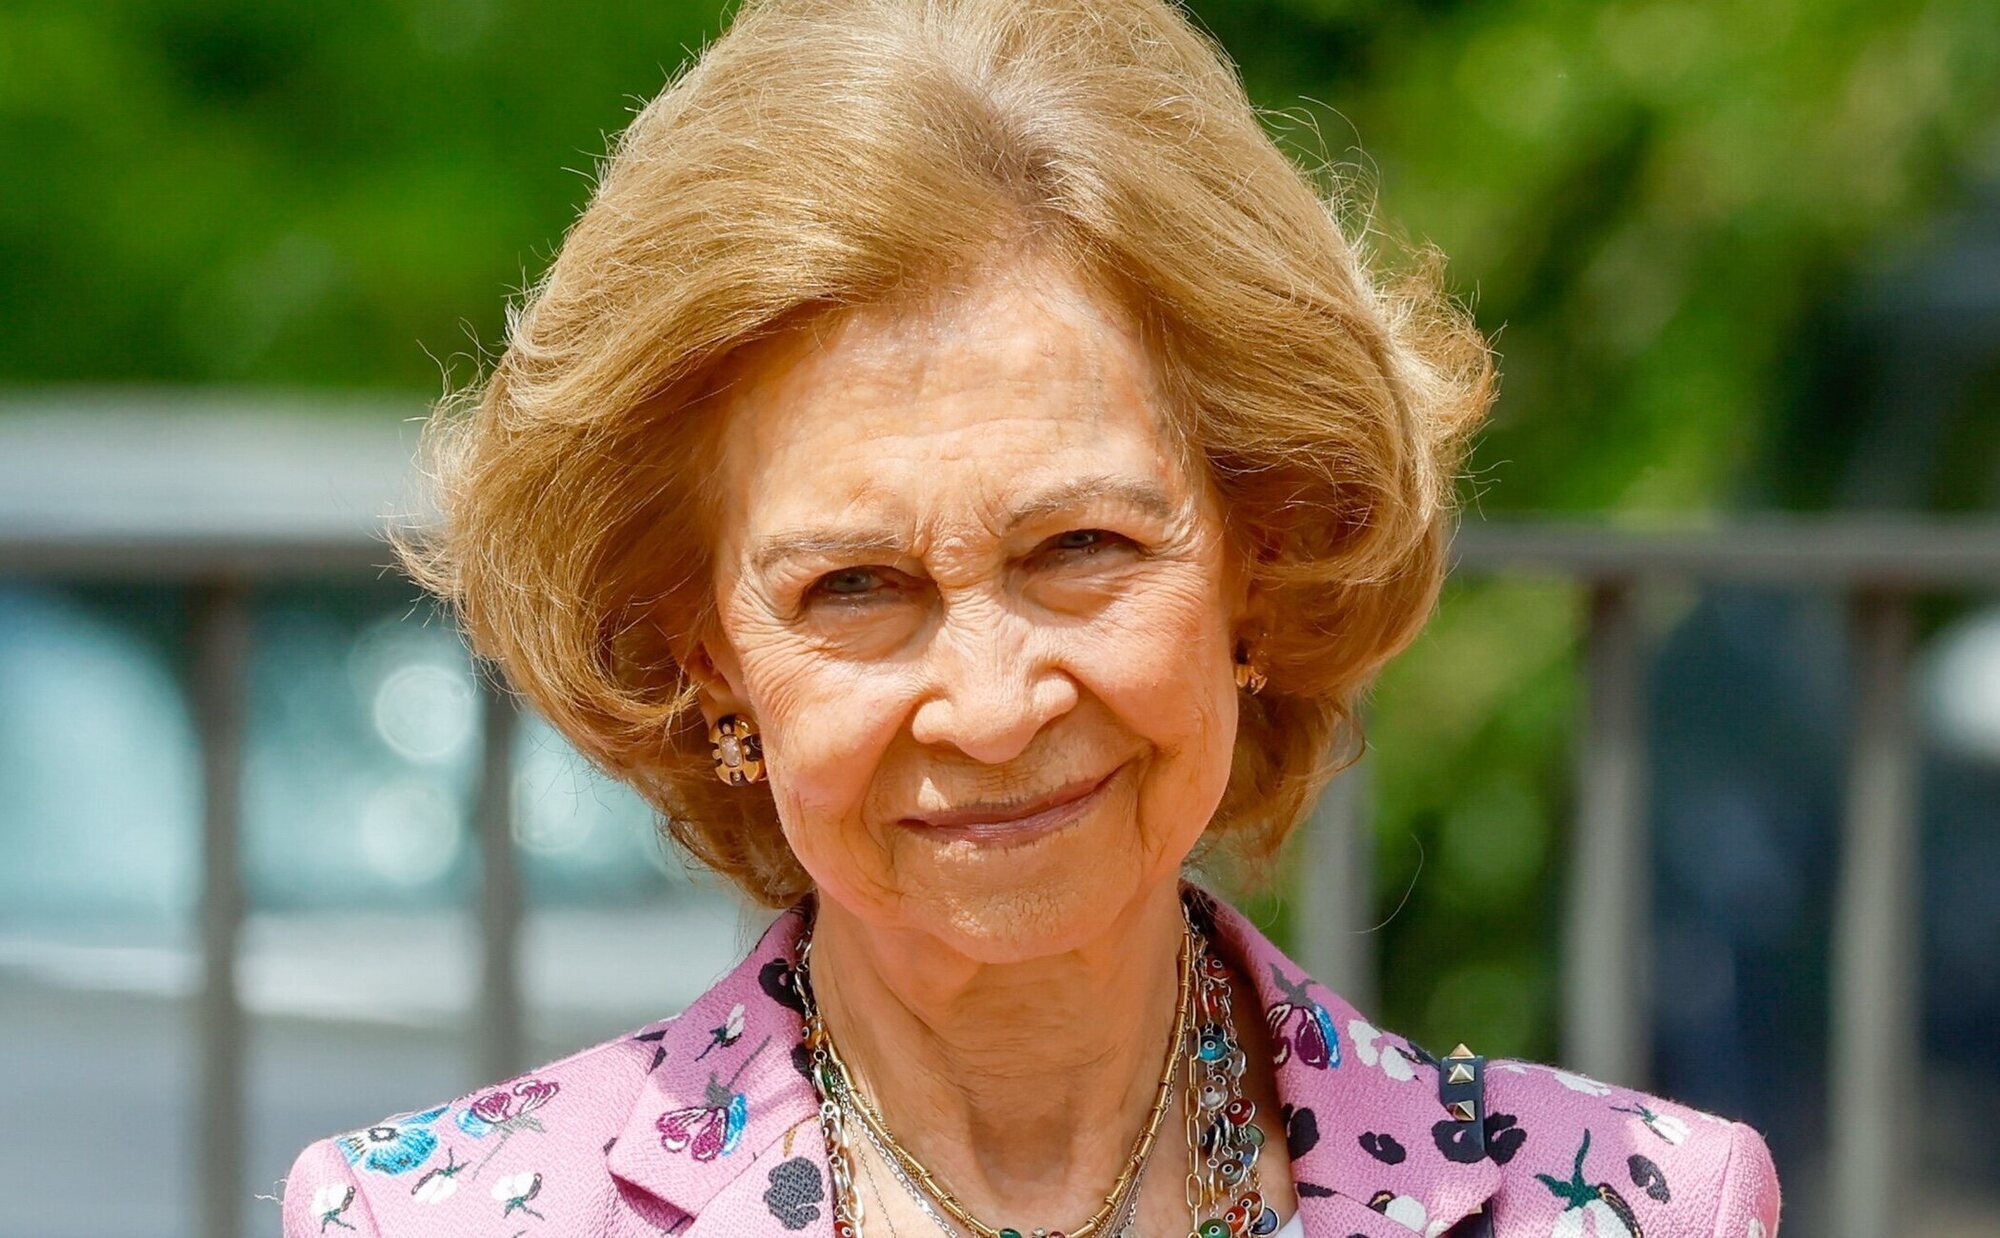 La Reina Sofía celebra su 85 cumpleaños con un almuerzo en La Zarzuela con presencias y ausencias familiares